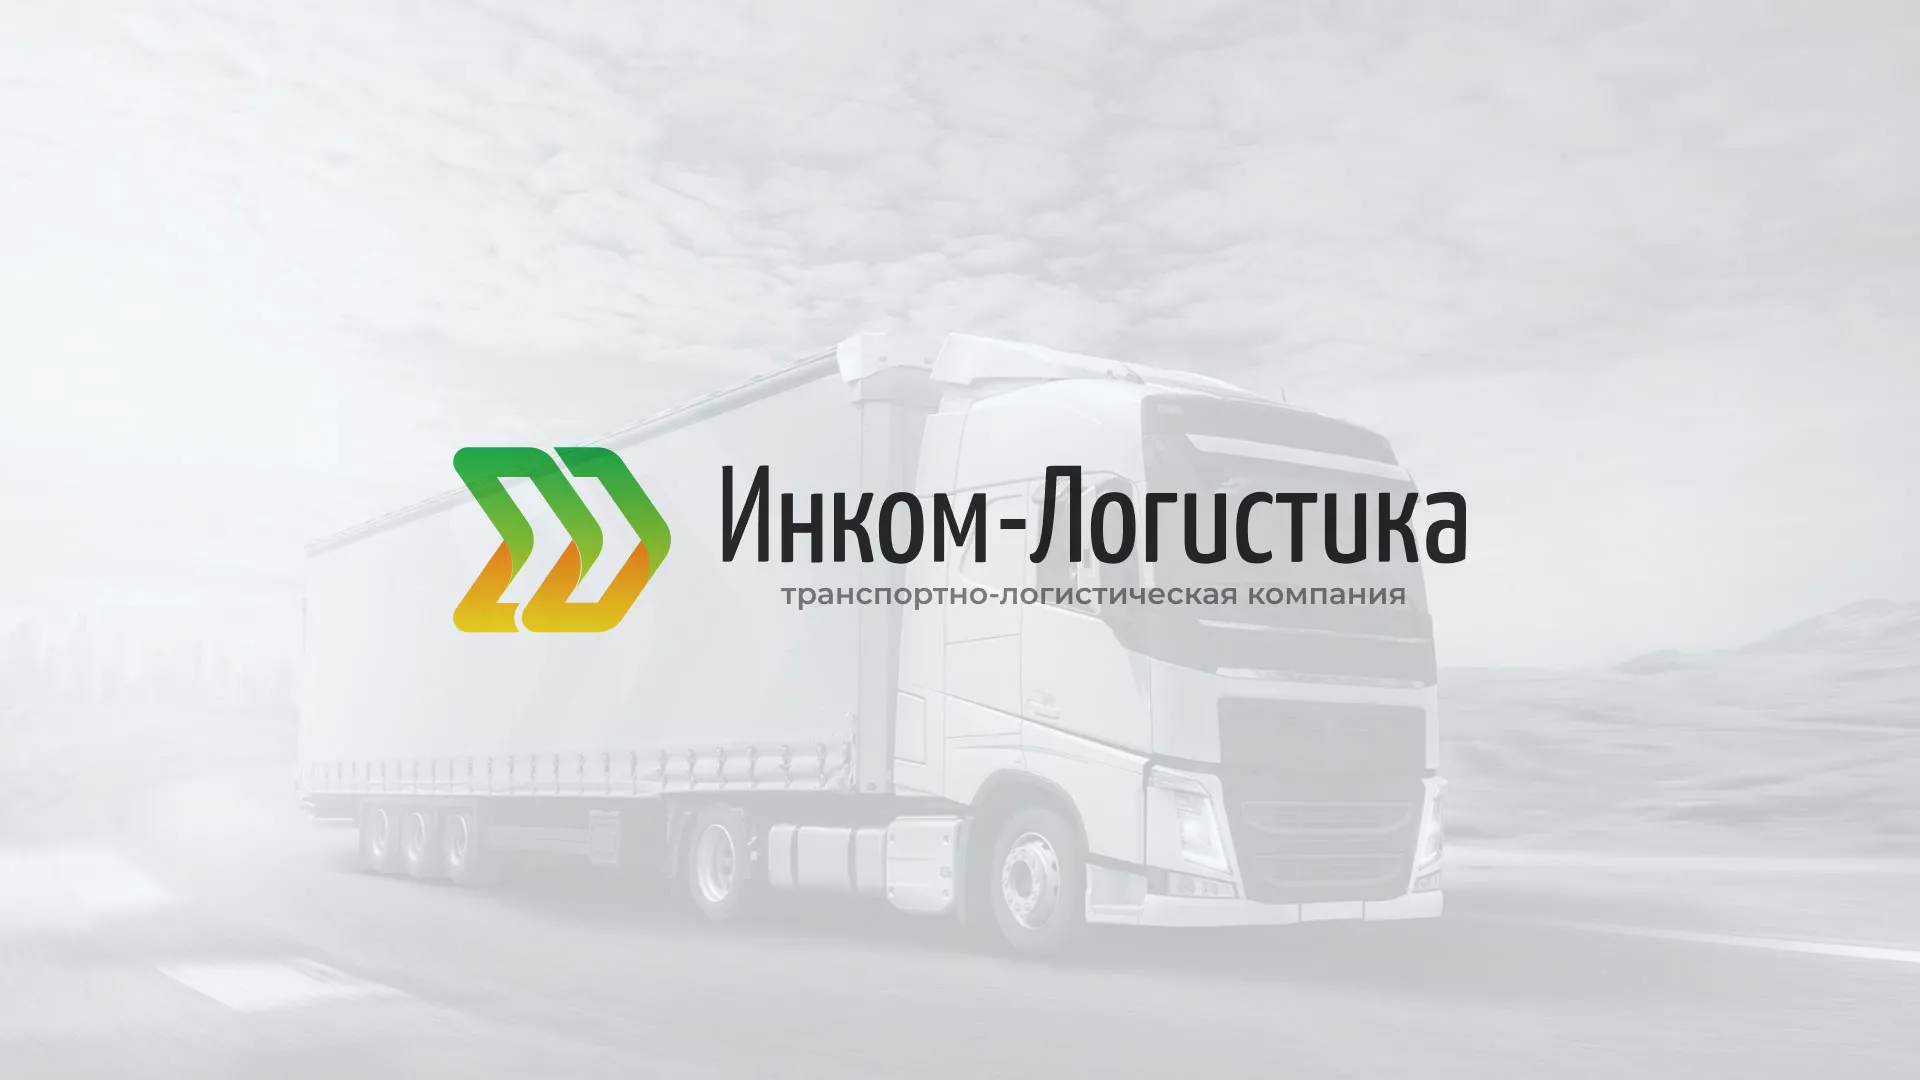 Разработка логотипа и сайта компании «Инком-Логистика» в Омутнинске